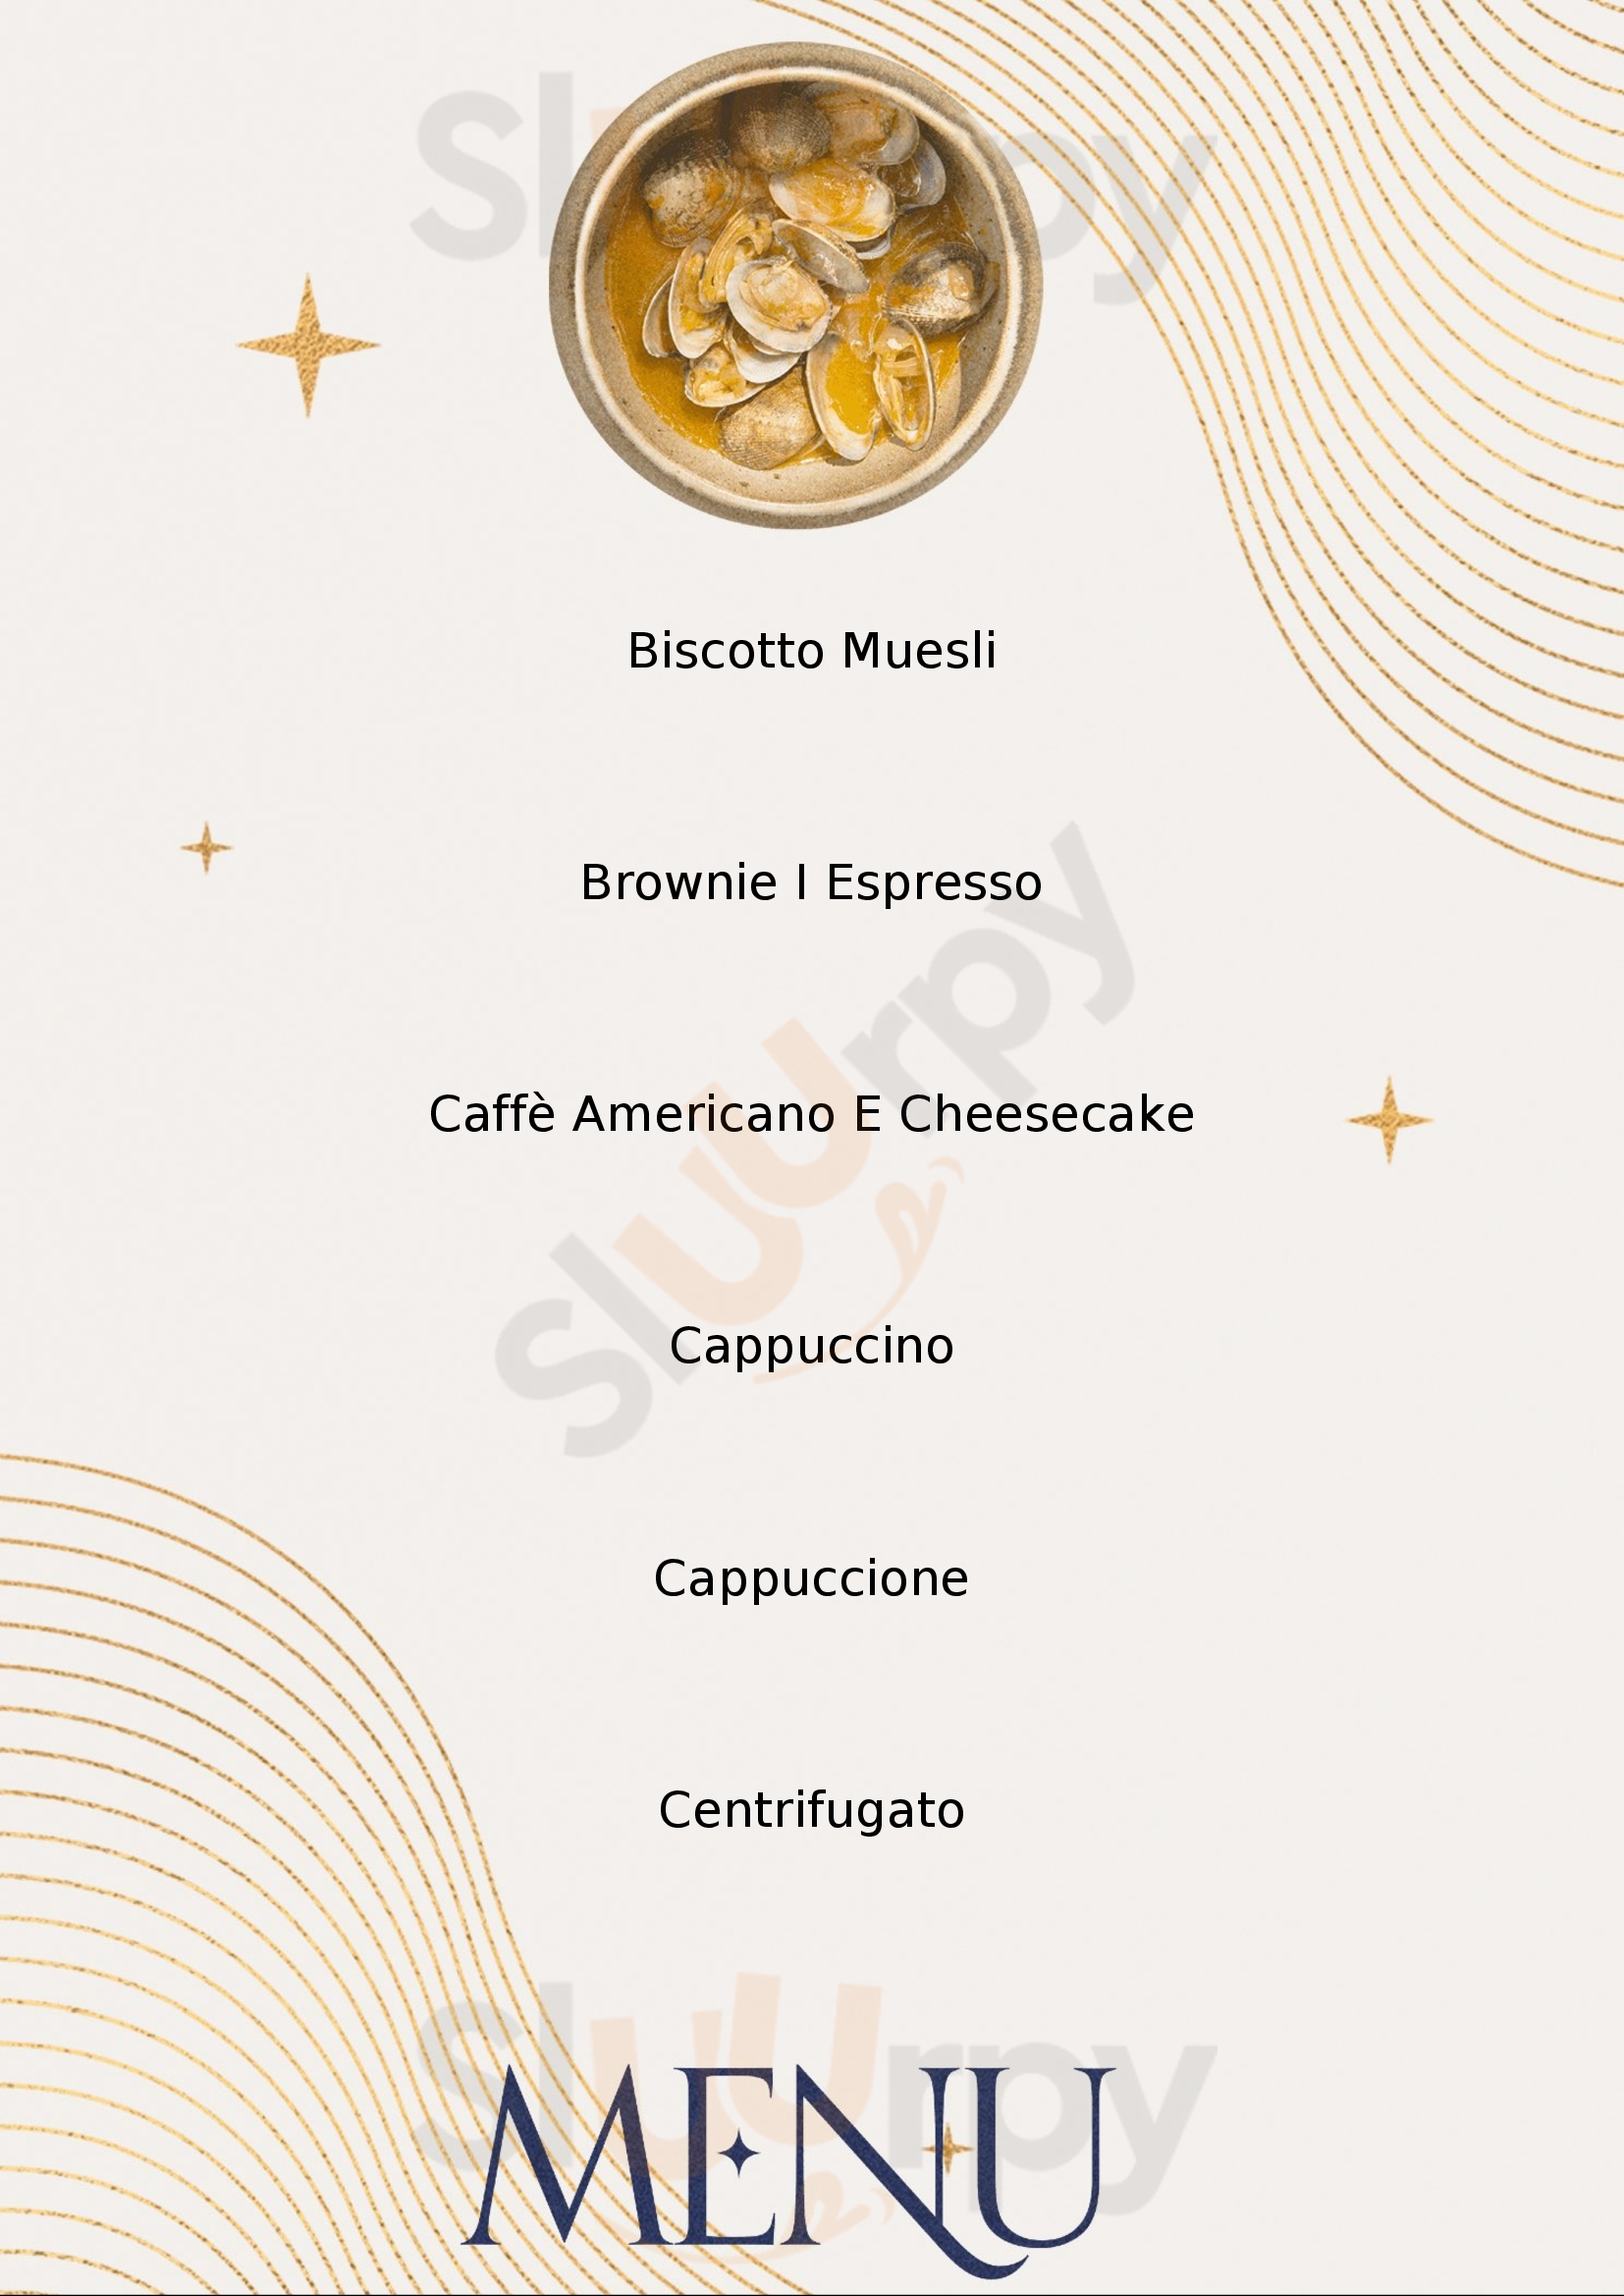 Botega Caffè Cacao Bergamo menù 1 pagina